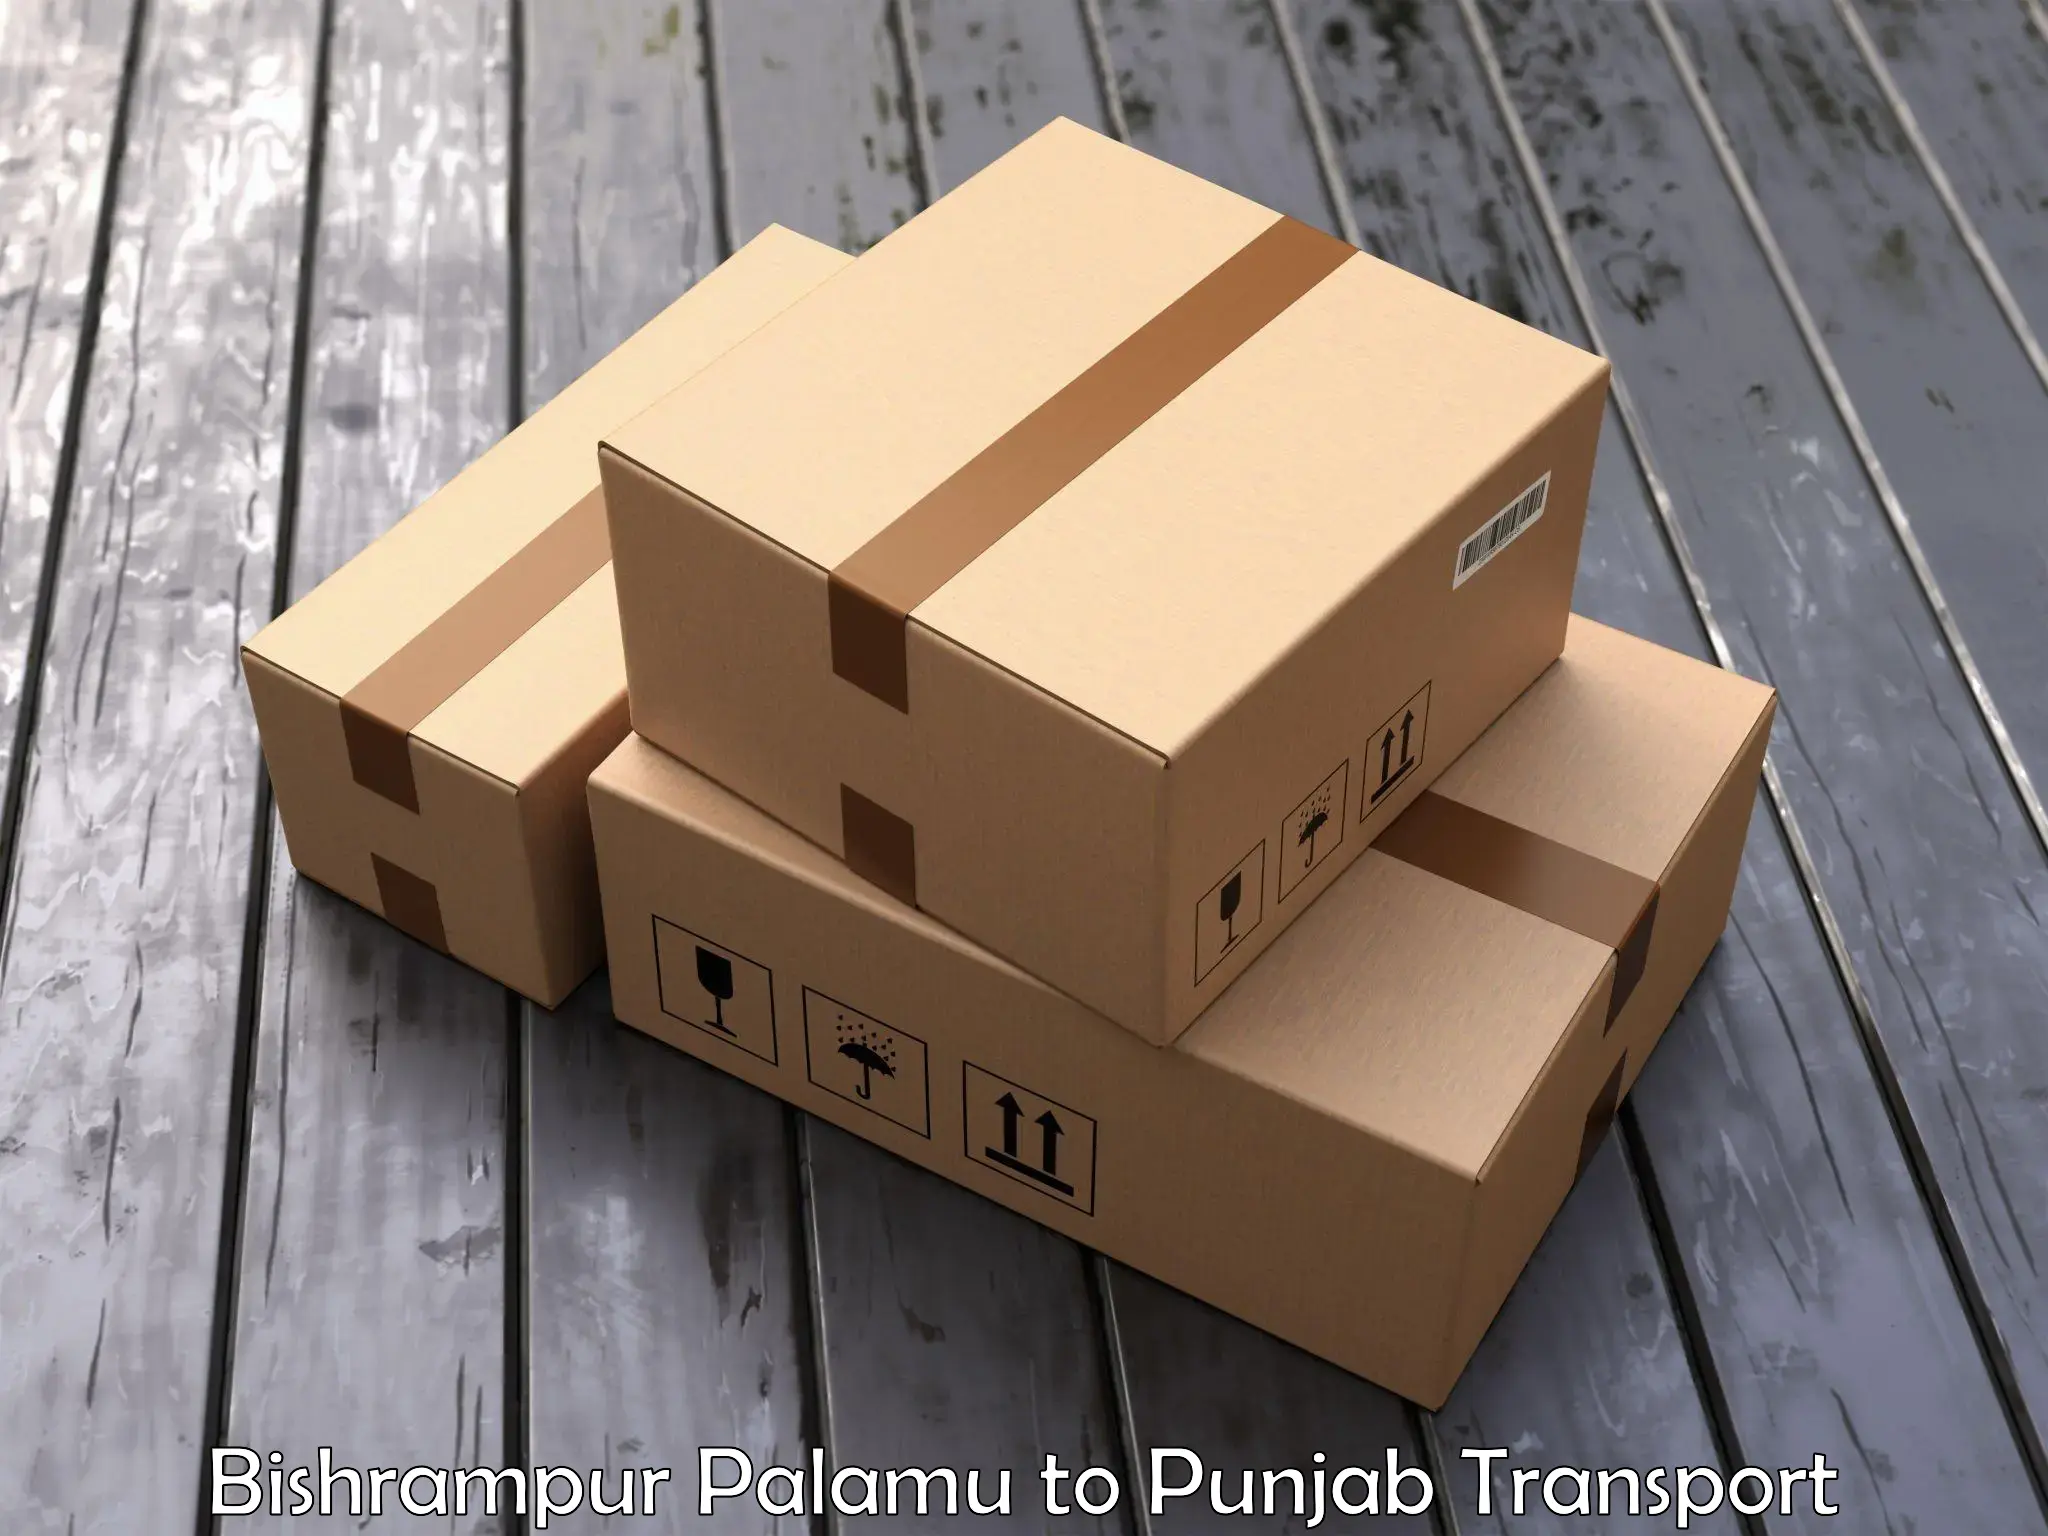 Container transport service Bishrampur Palamu to Punjab